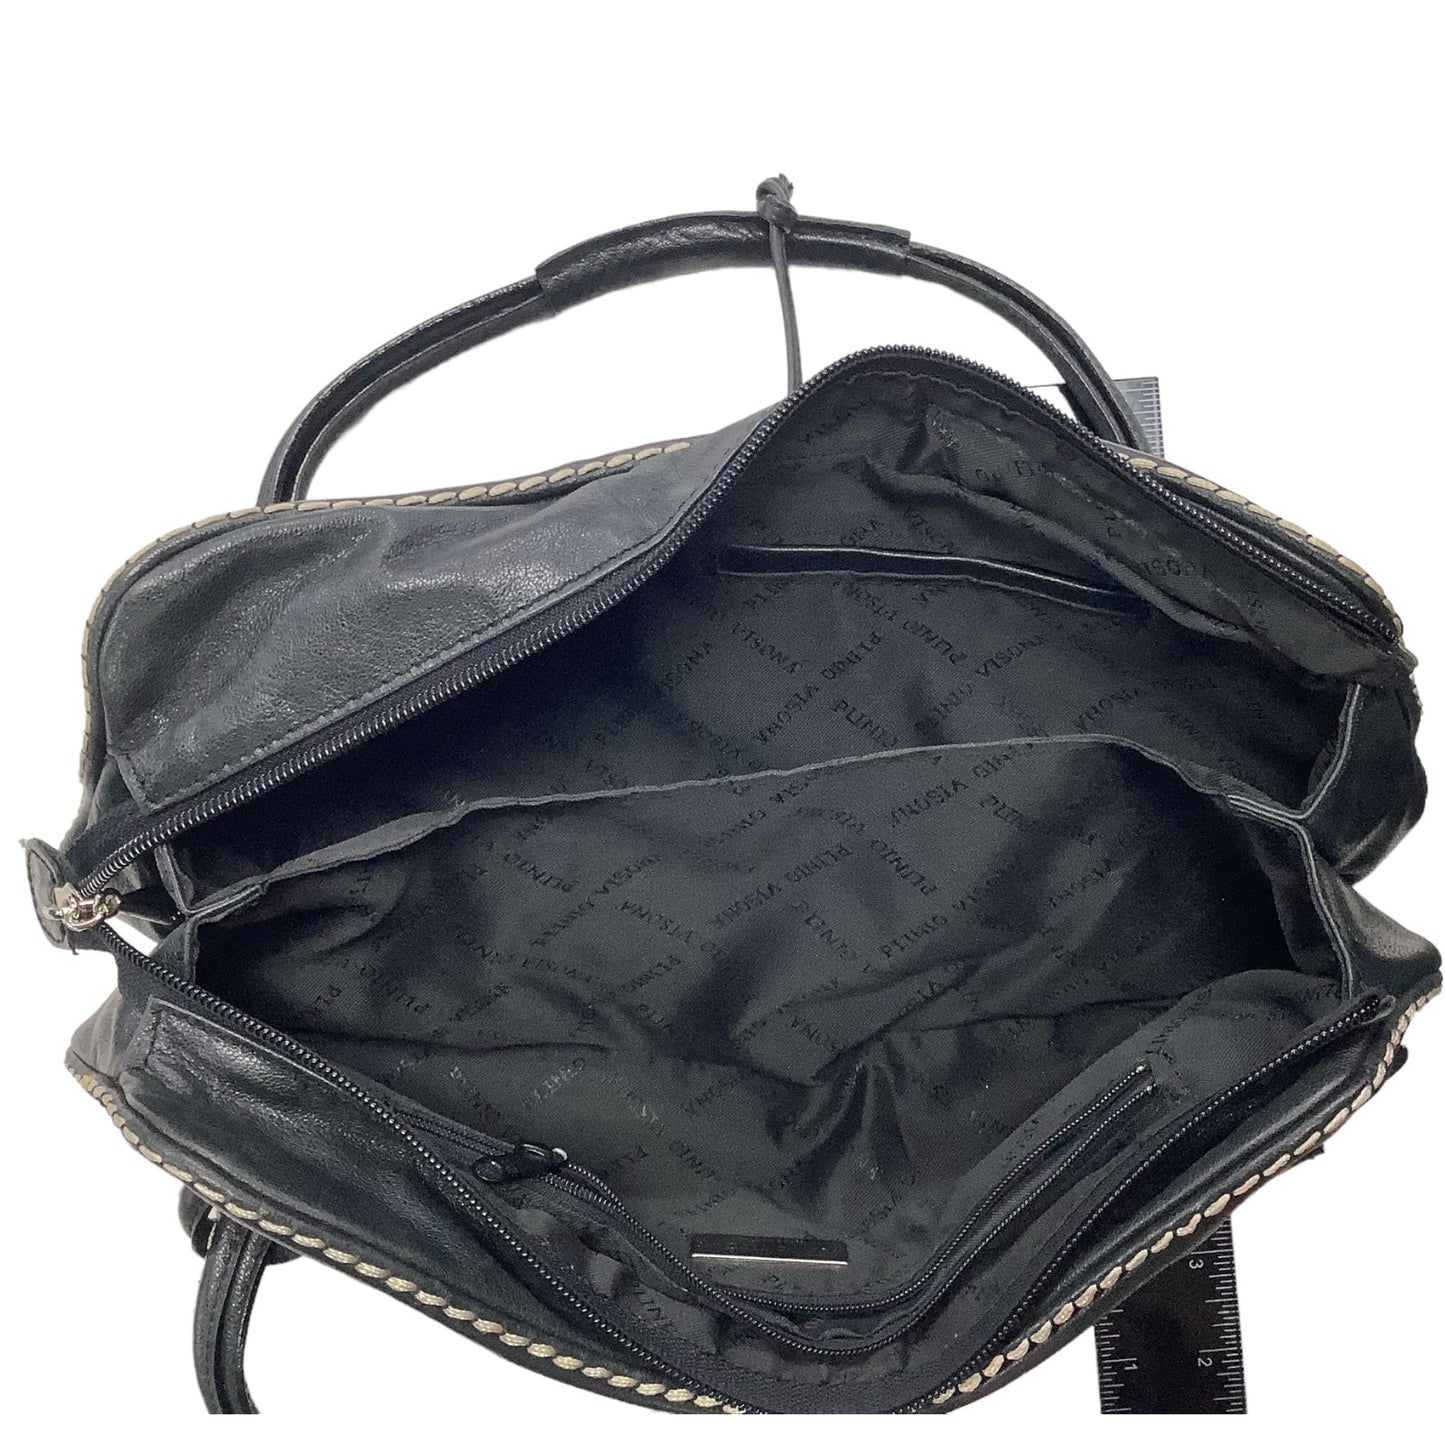 Handbag Cma, Size Small